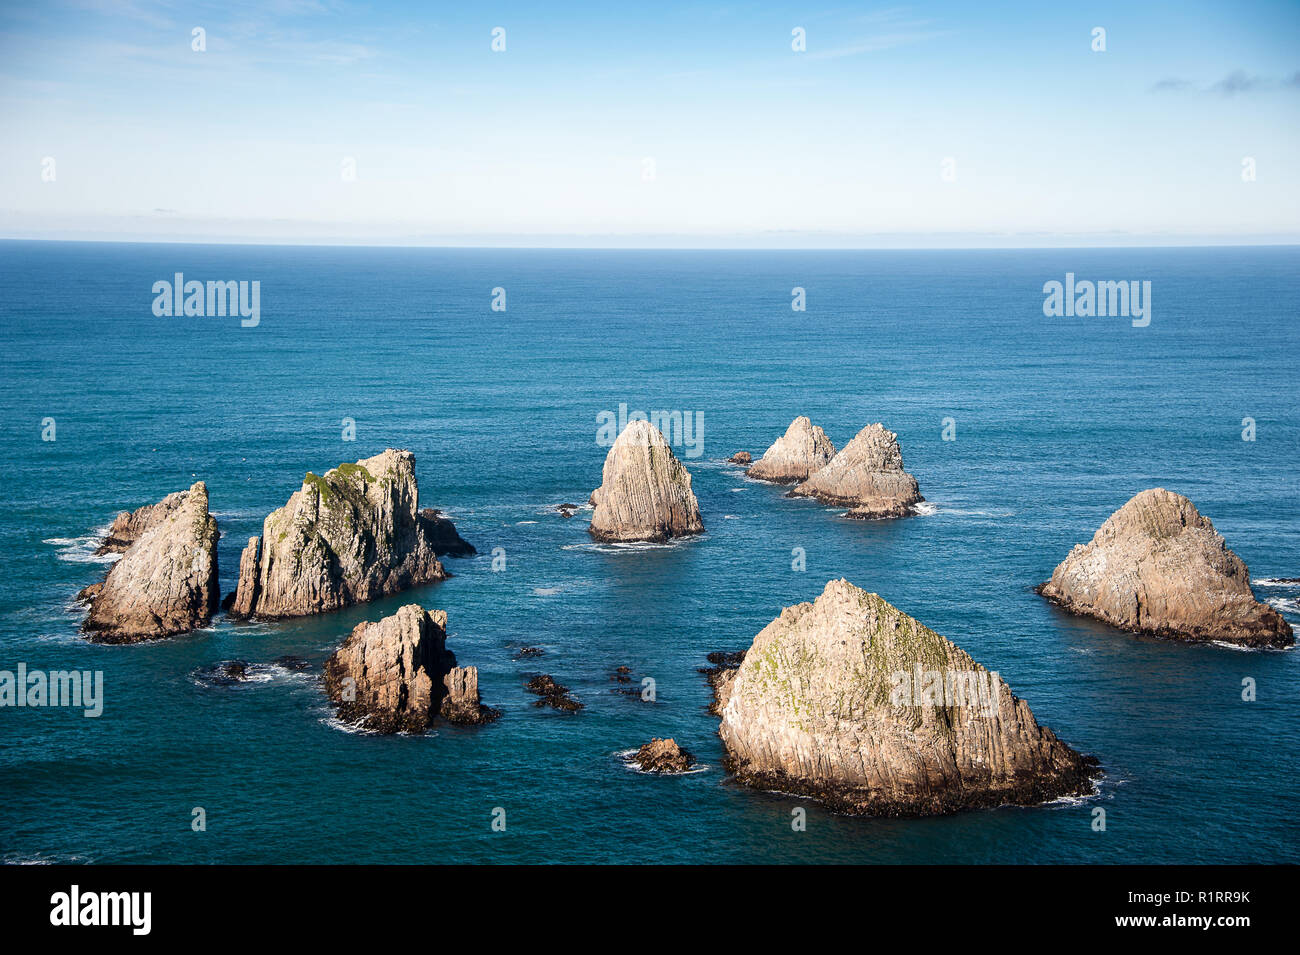 Les Nuggets, reliefs antiques sur la côte Catlins, Nouvelle-Zélande. Cercle d'îlots rocheux dans un océan bleu profond Banque D'Images